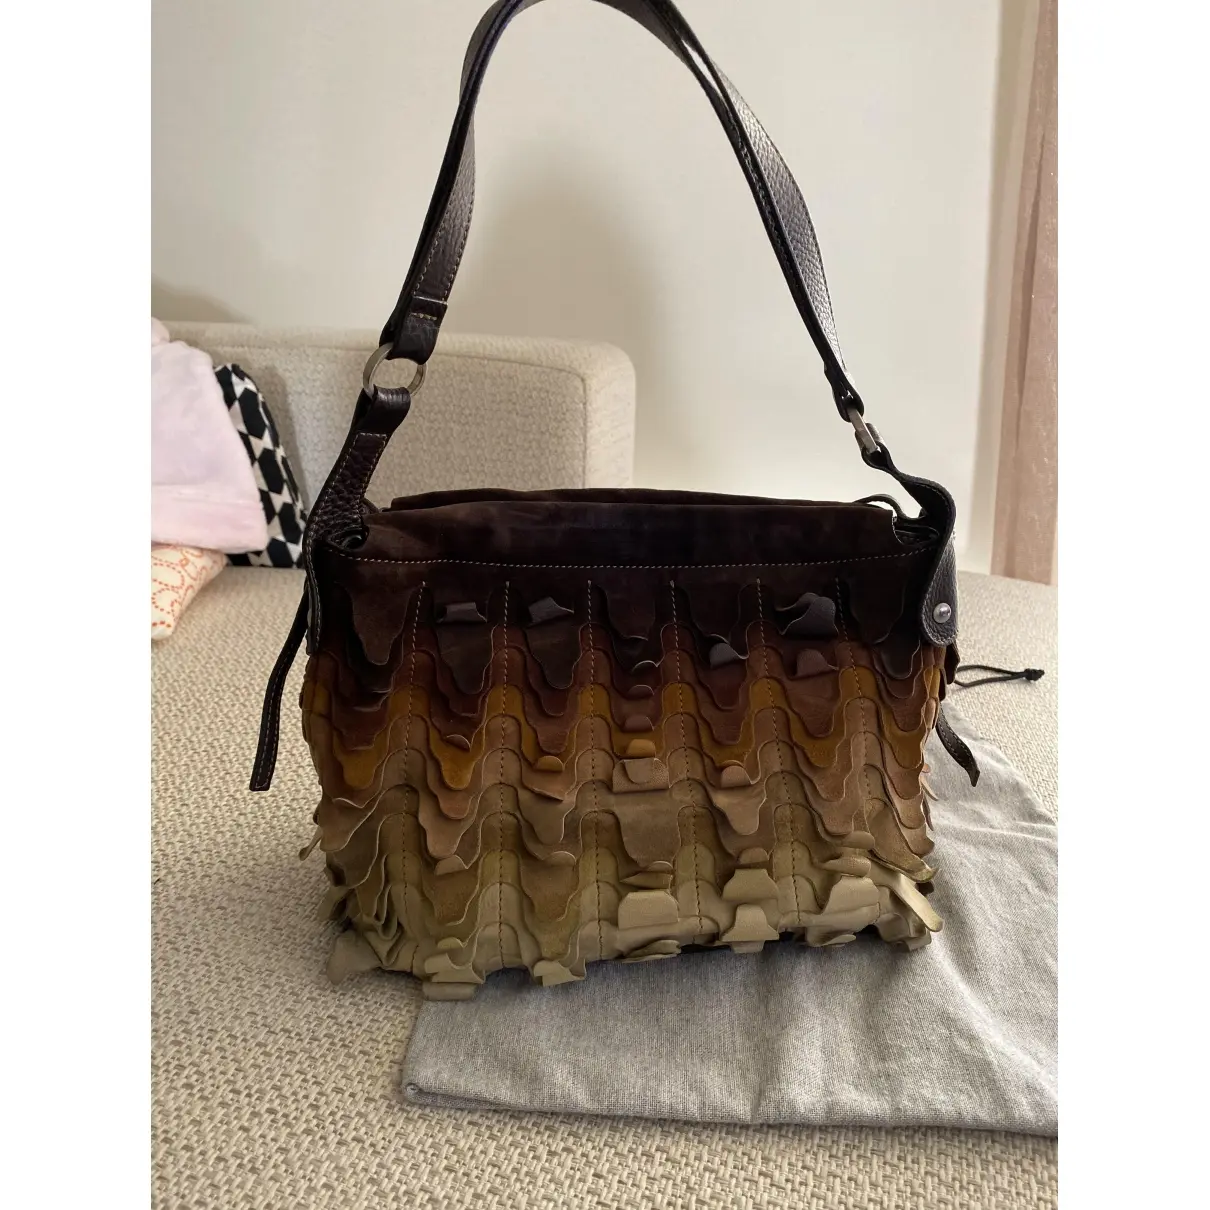 Hogan Leather handbag for sale - Vintage